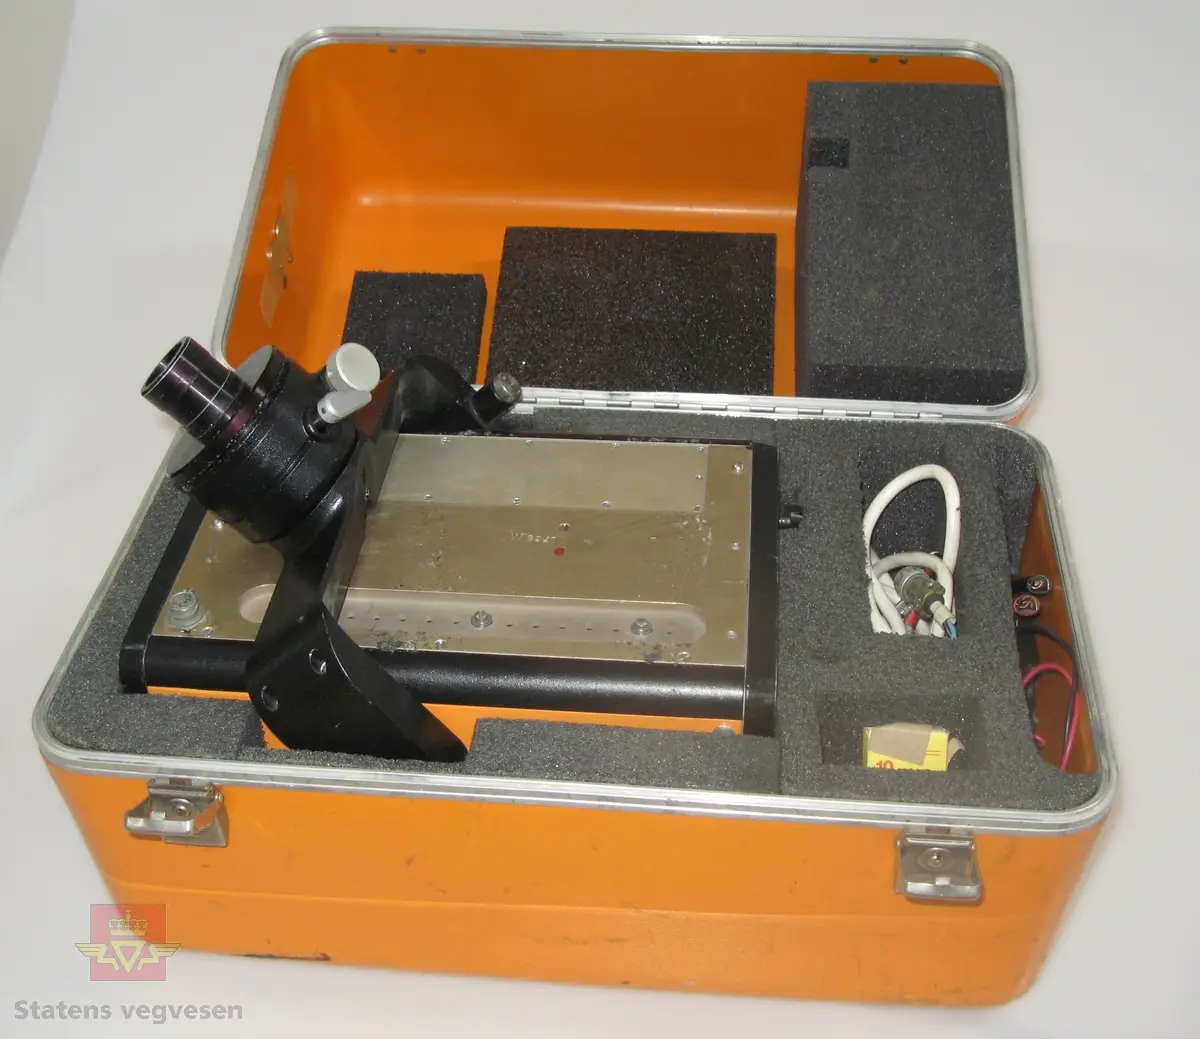 Oransje og svart elektronisk avstandsmåler med tilhørende utstyr og bruksanvisning, i oransje oppbevaringskasse. Merking.